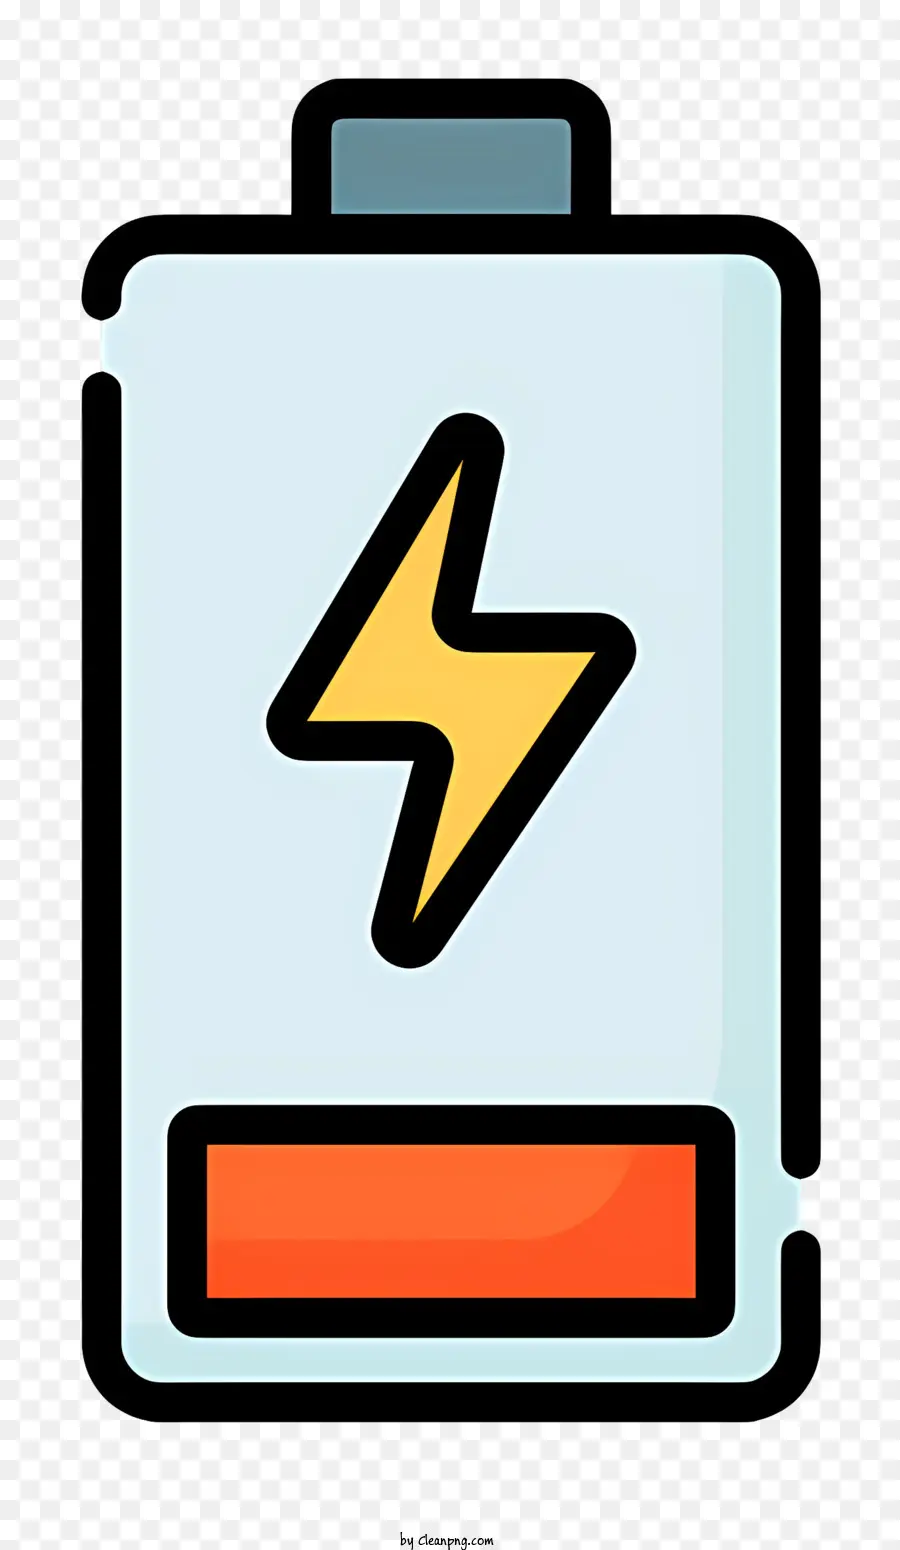 l'icona della batteria - Batteria vuota con fulmine; 
Colori monocromatici